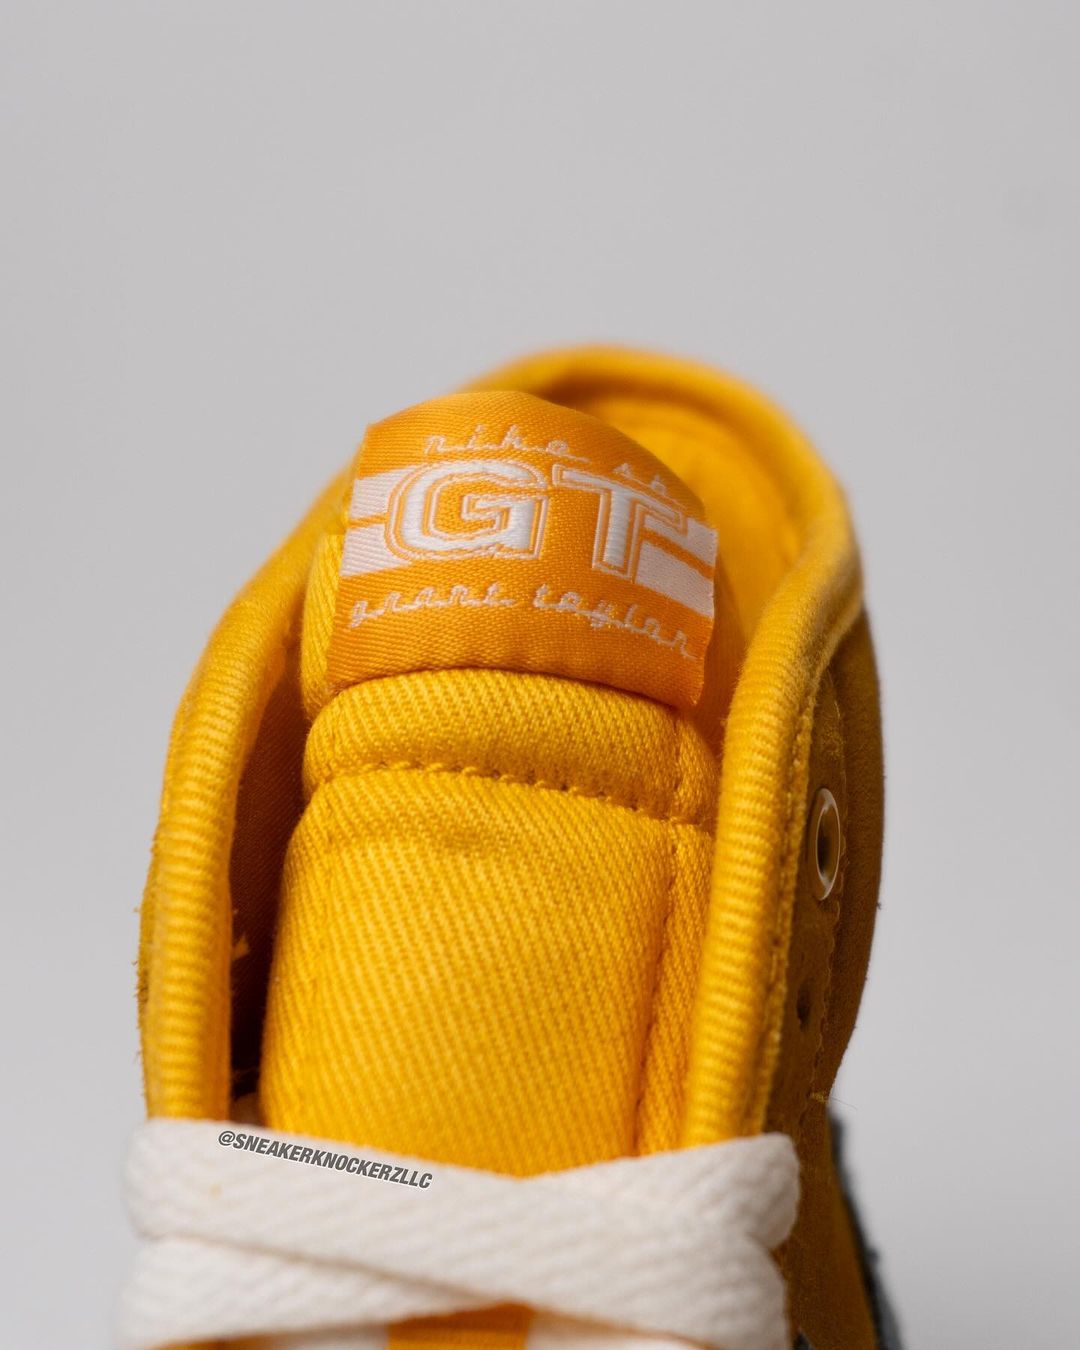 【国内 11/16 発売予定】Grant Taylor x Nike SB BLAZER MID PRO GT (グラント・テイラー ナイキ SB ブレーザー ミッド プロ) [FD0269-700]